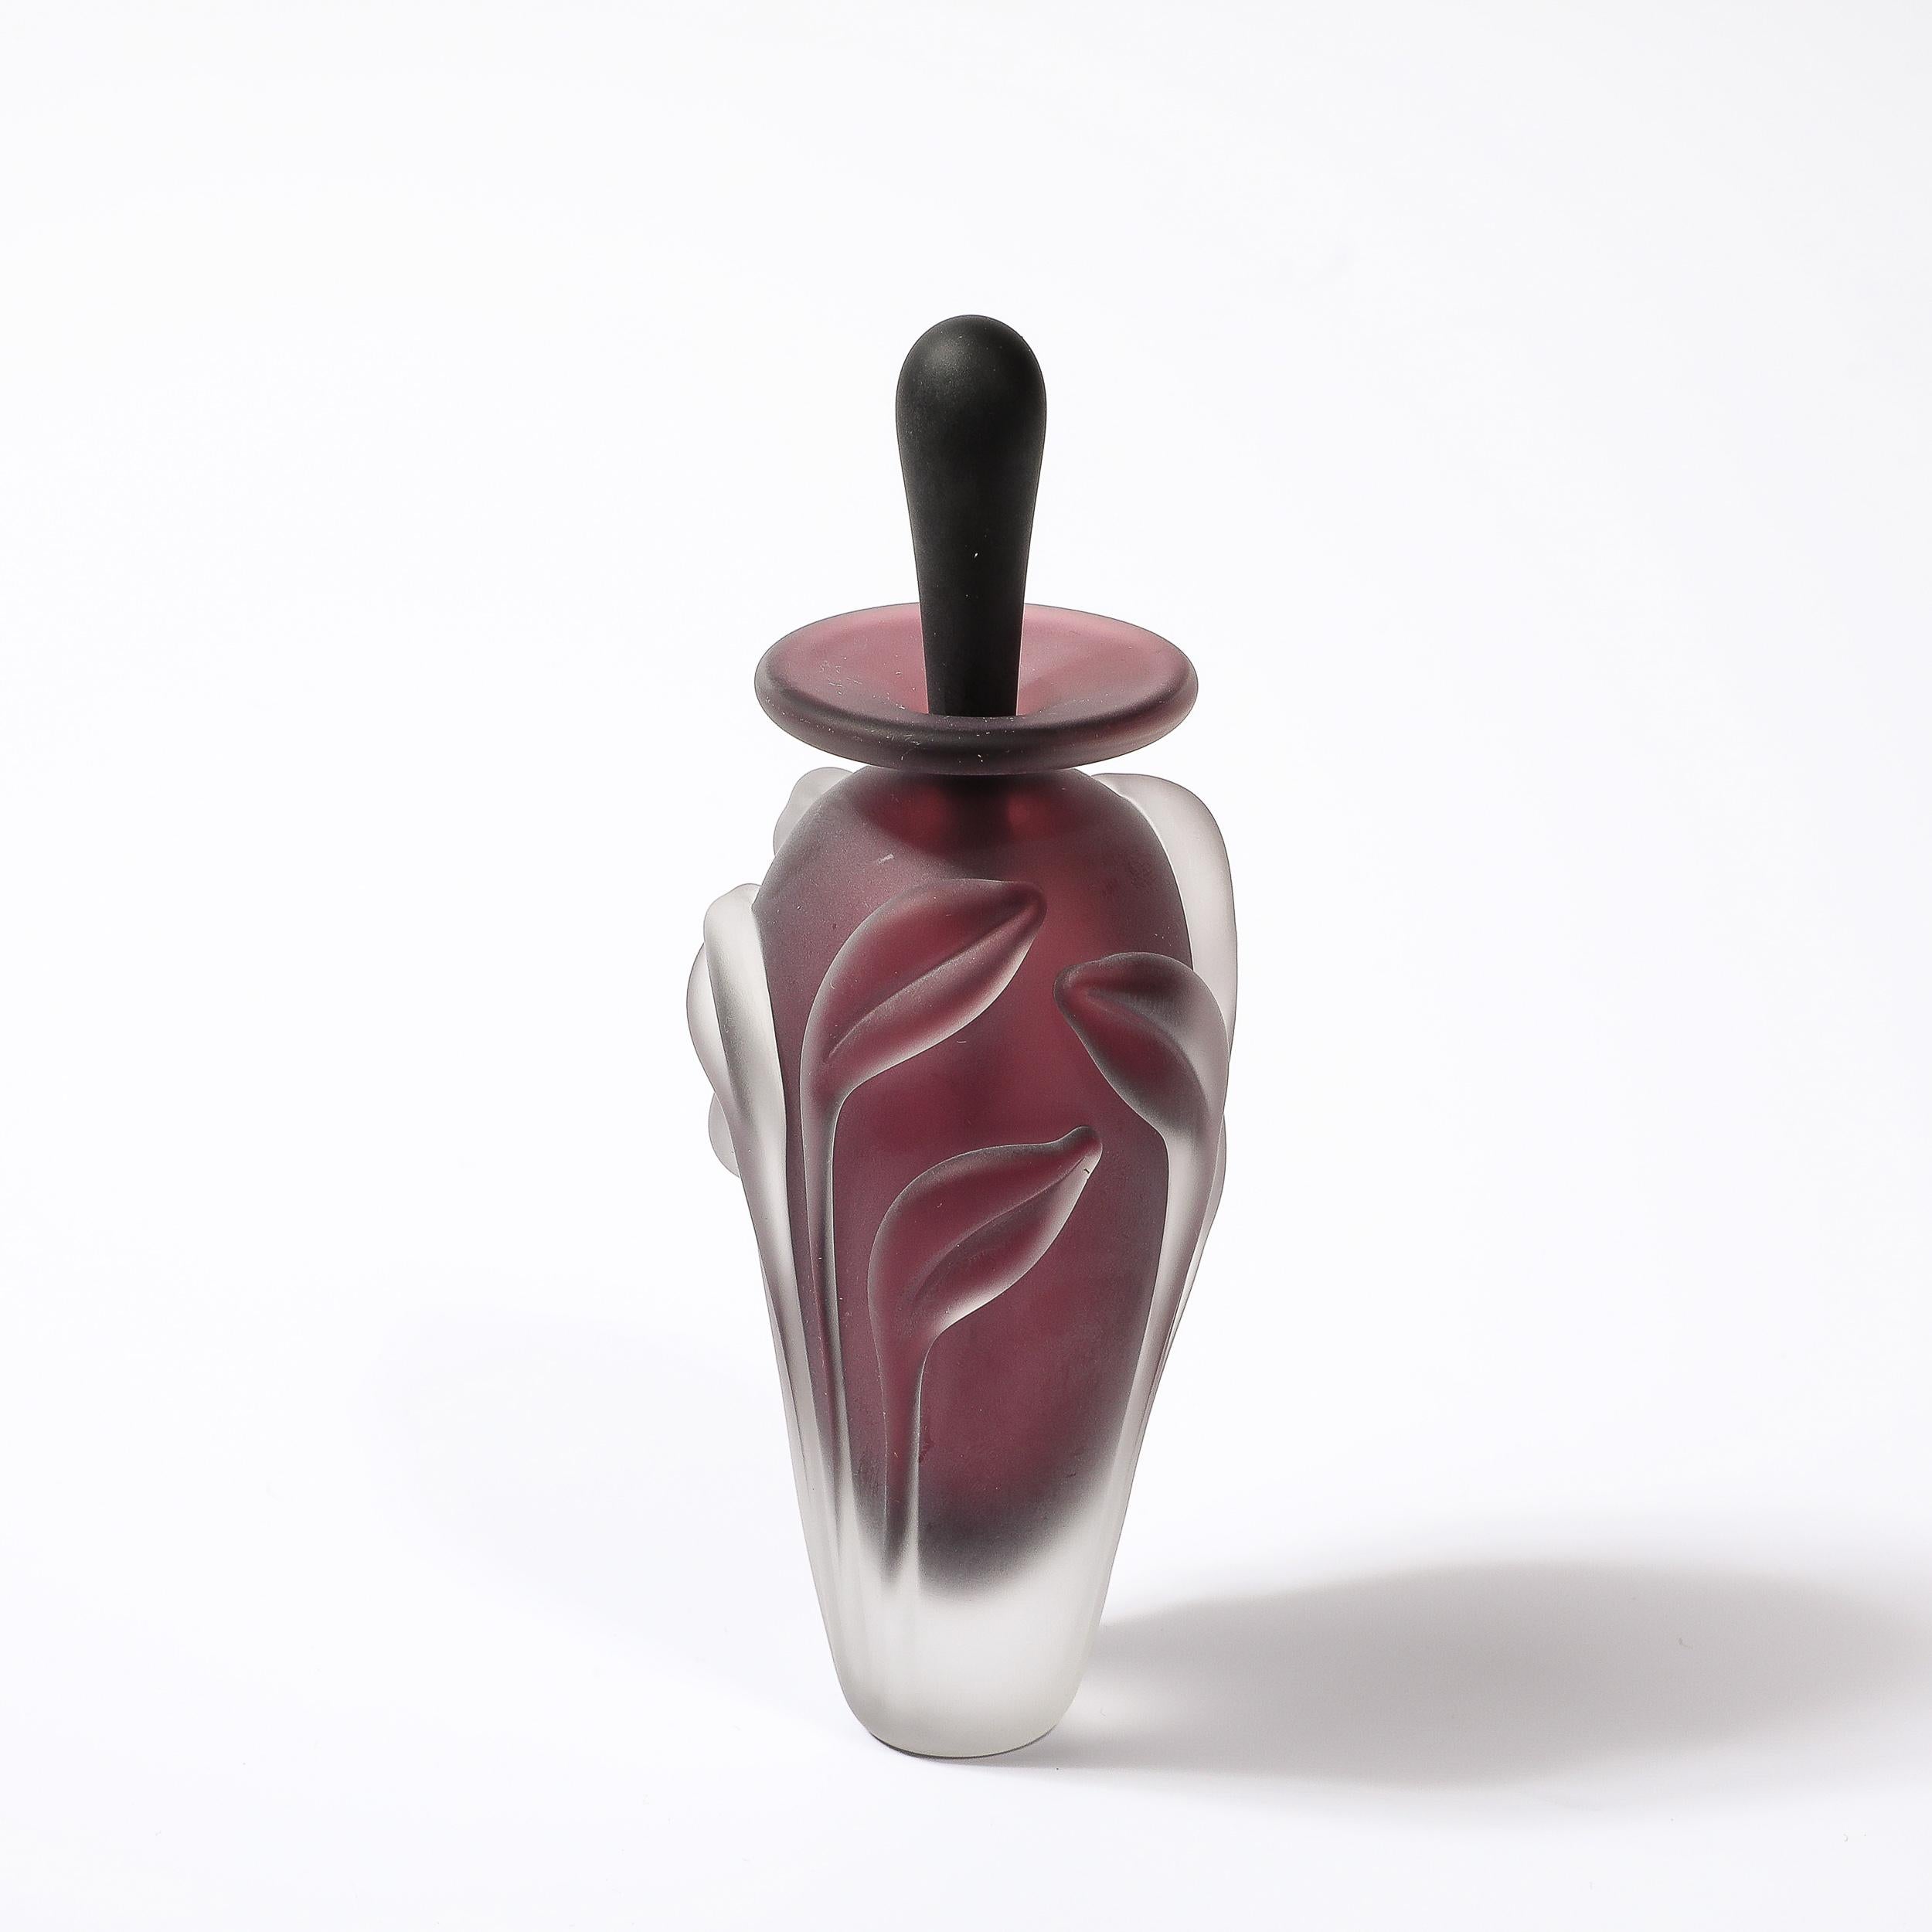 Diese schöne und raffinierte modernistische Milchglas-Parfümflasche mit floralen Reliefs in geräuchertem Amethyst von William Glasner stammt aus den Vereinigten Staaten, ca. 1990. Die schöne, konisch zulaufende Form ist in einem atemberaubenden